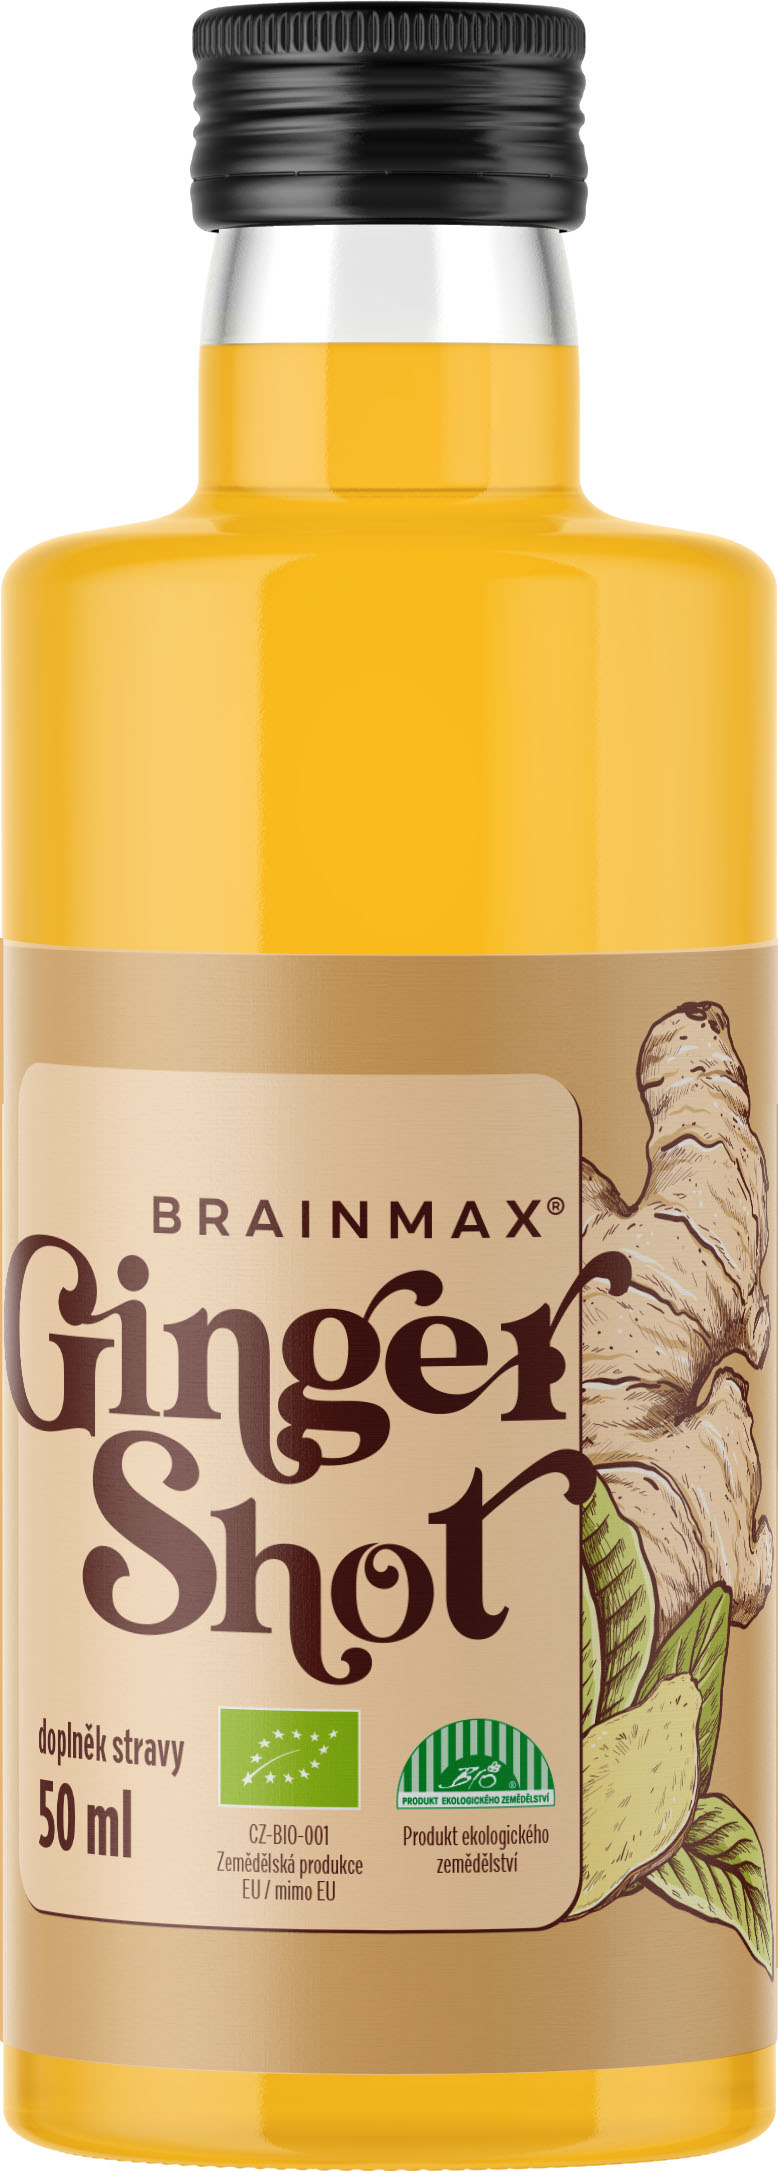 Levně BrainMax Pure Ginger Shot, zázvorová štáva s kurkumou, BIO Objem: 50 ml Šťáva ze zázvoru s kurkumou, medem, kokosovou vodou a kampotským pepřem, *CZ-BIO-001 certifikát